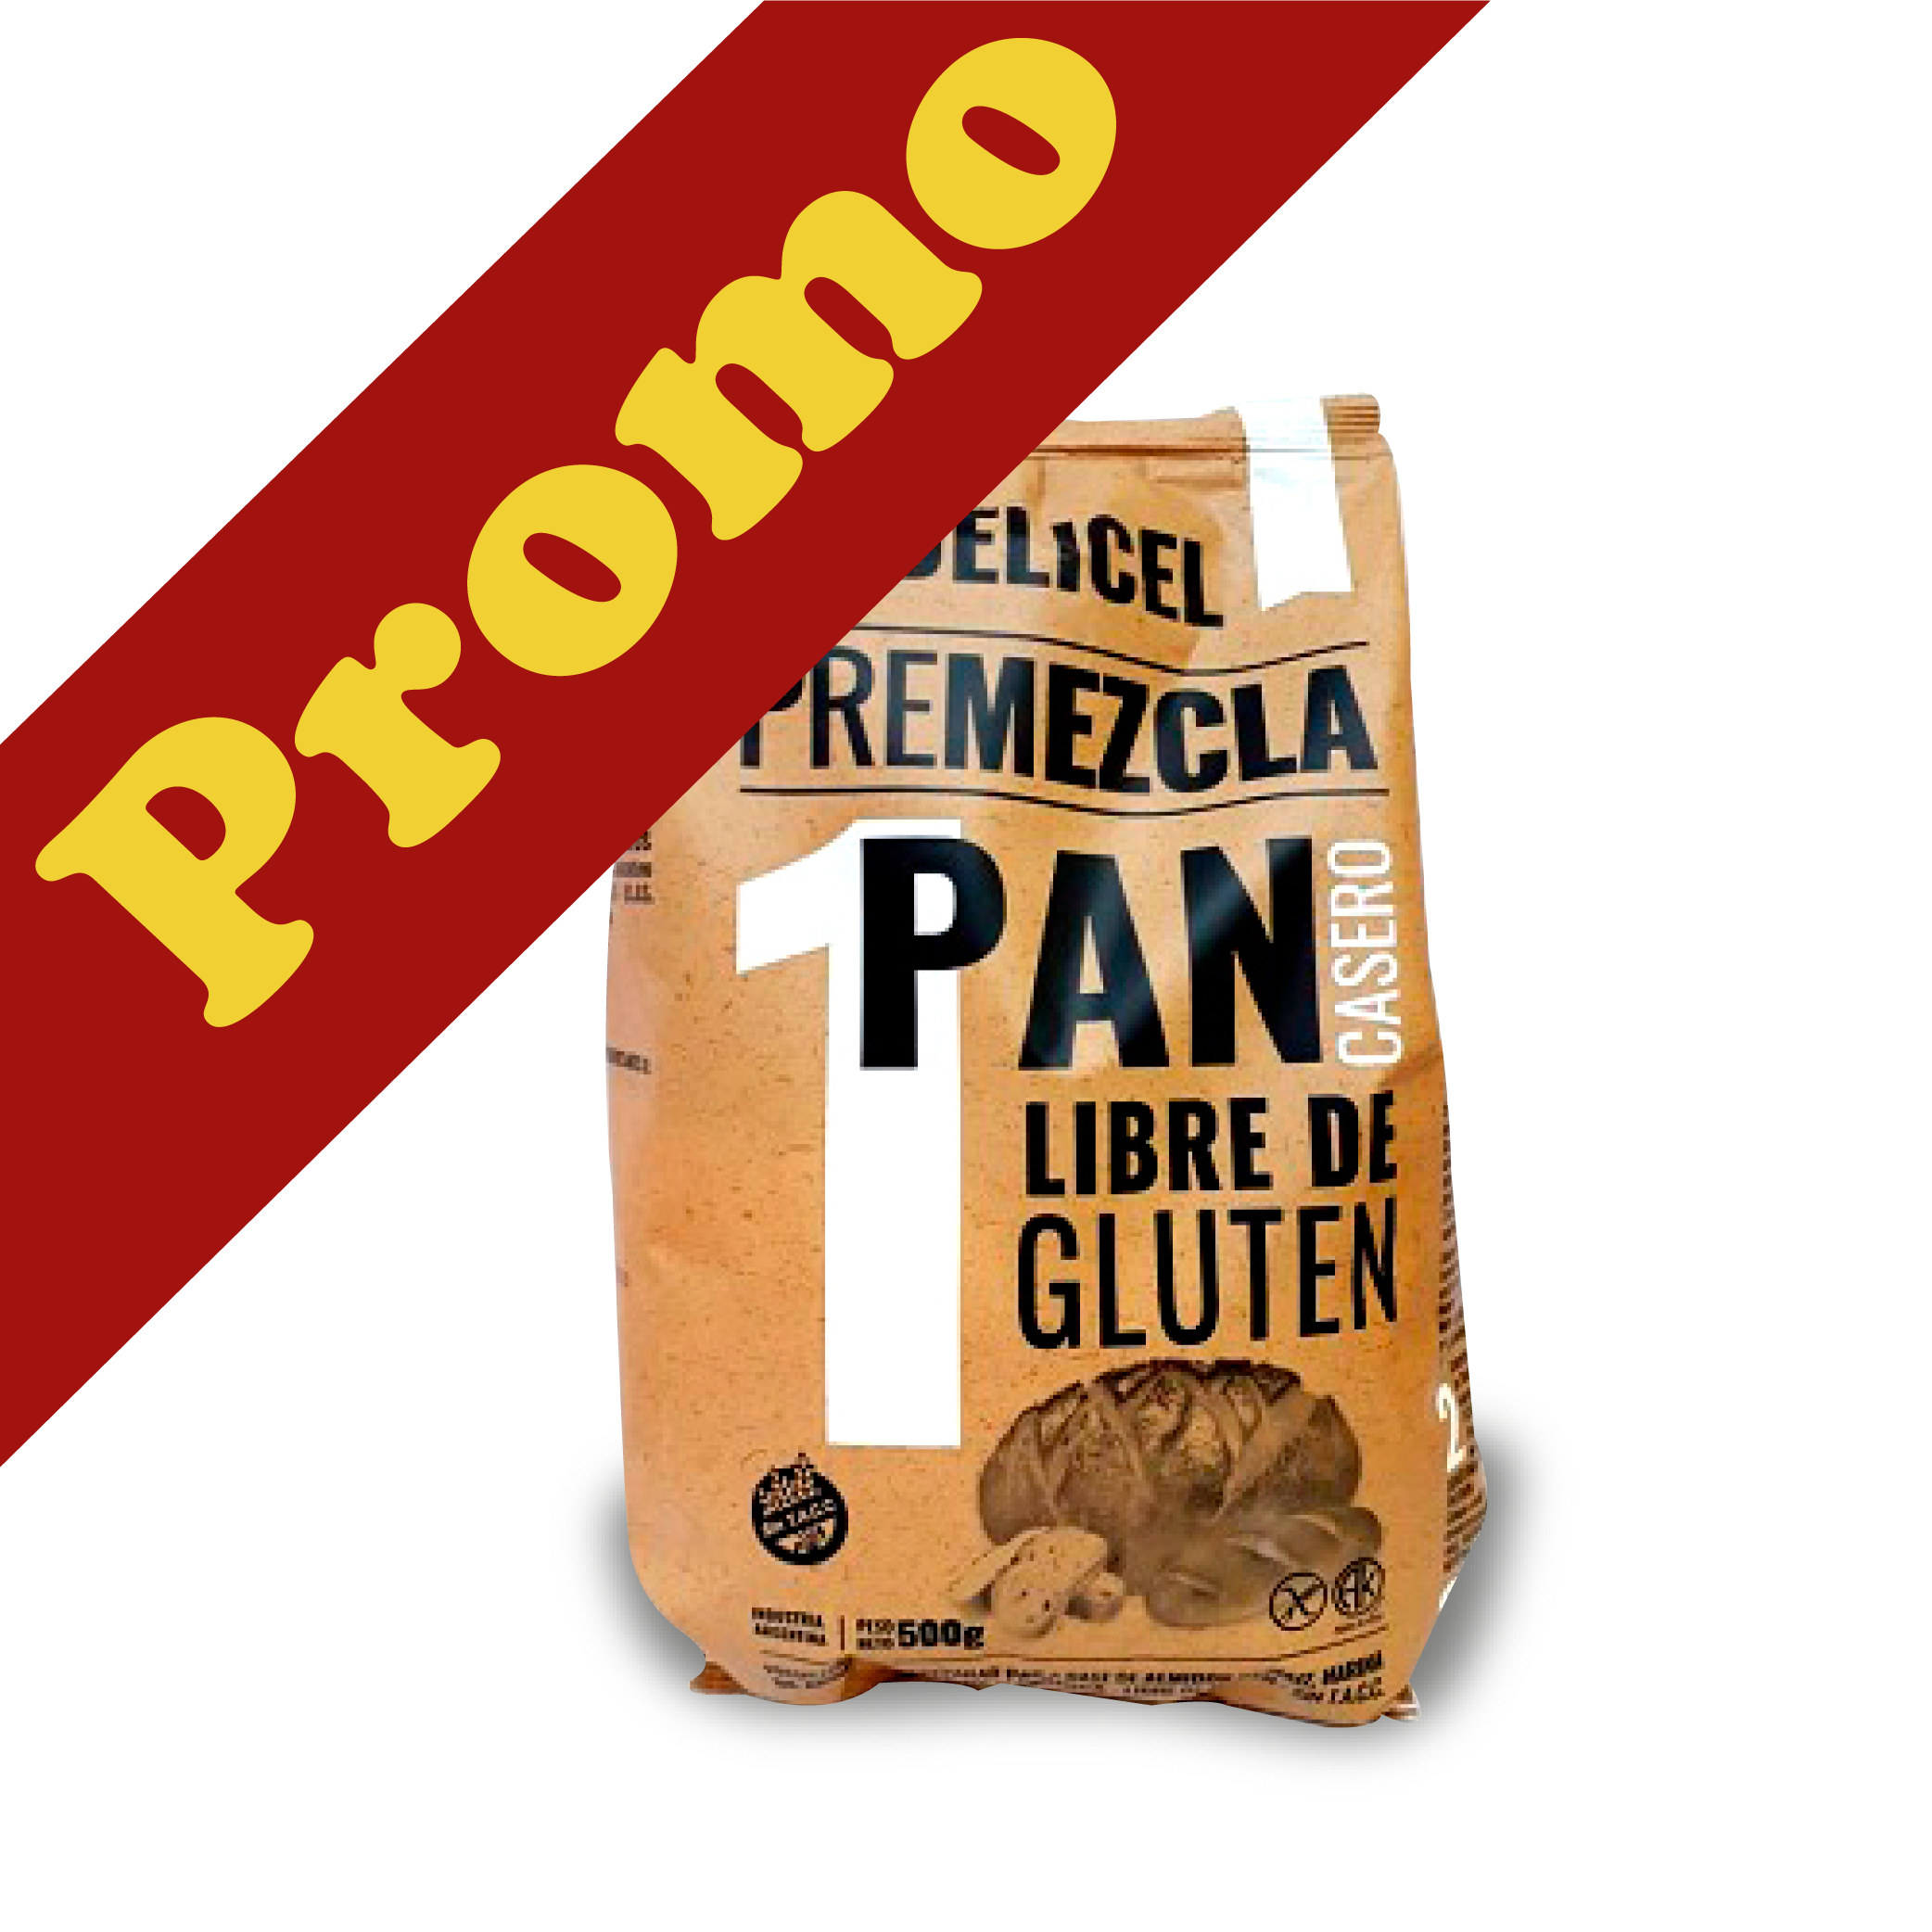 Delicel-Premezcla Pan SIN TACC-  PROMO 4 x 500gr